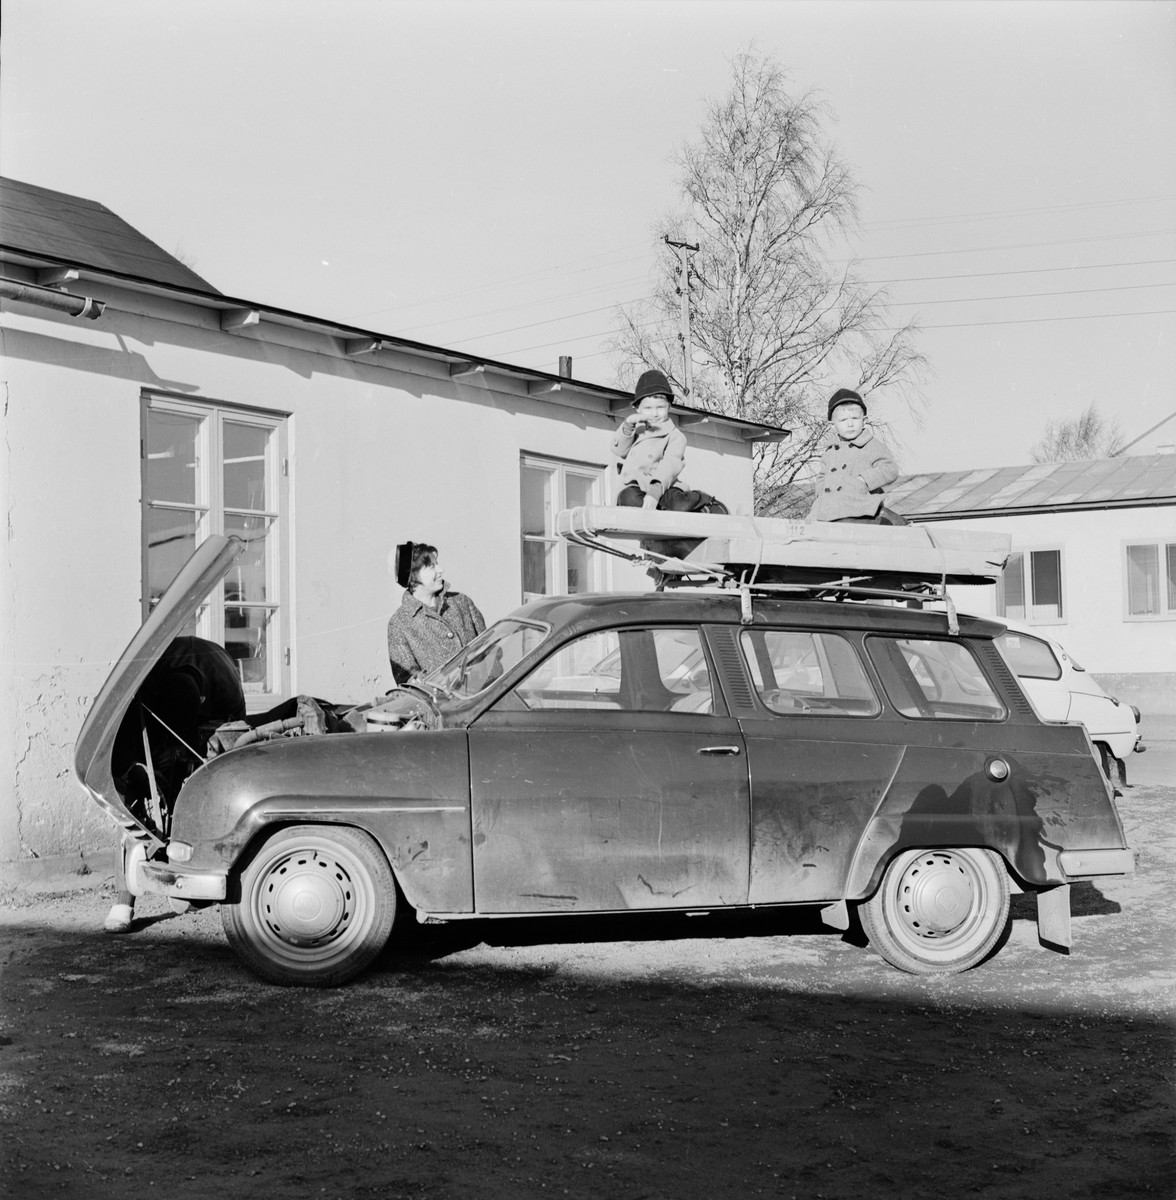 Svensk Bilprovning - "ingen rusning ännu till bilprovningen", Uppsala 1964